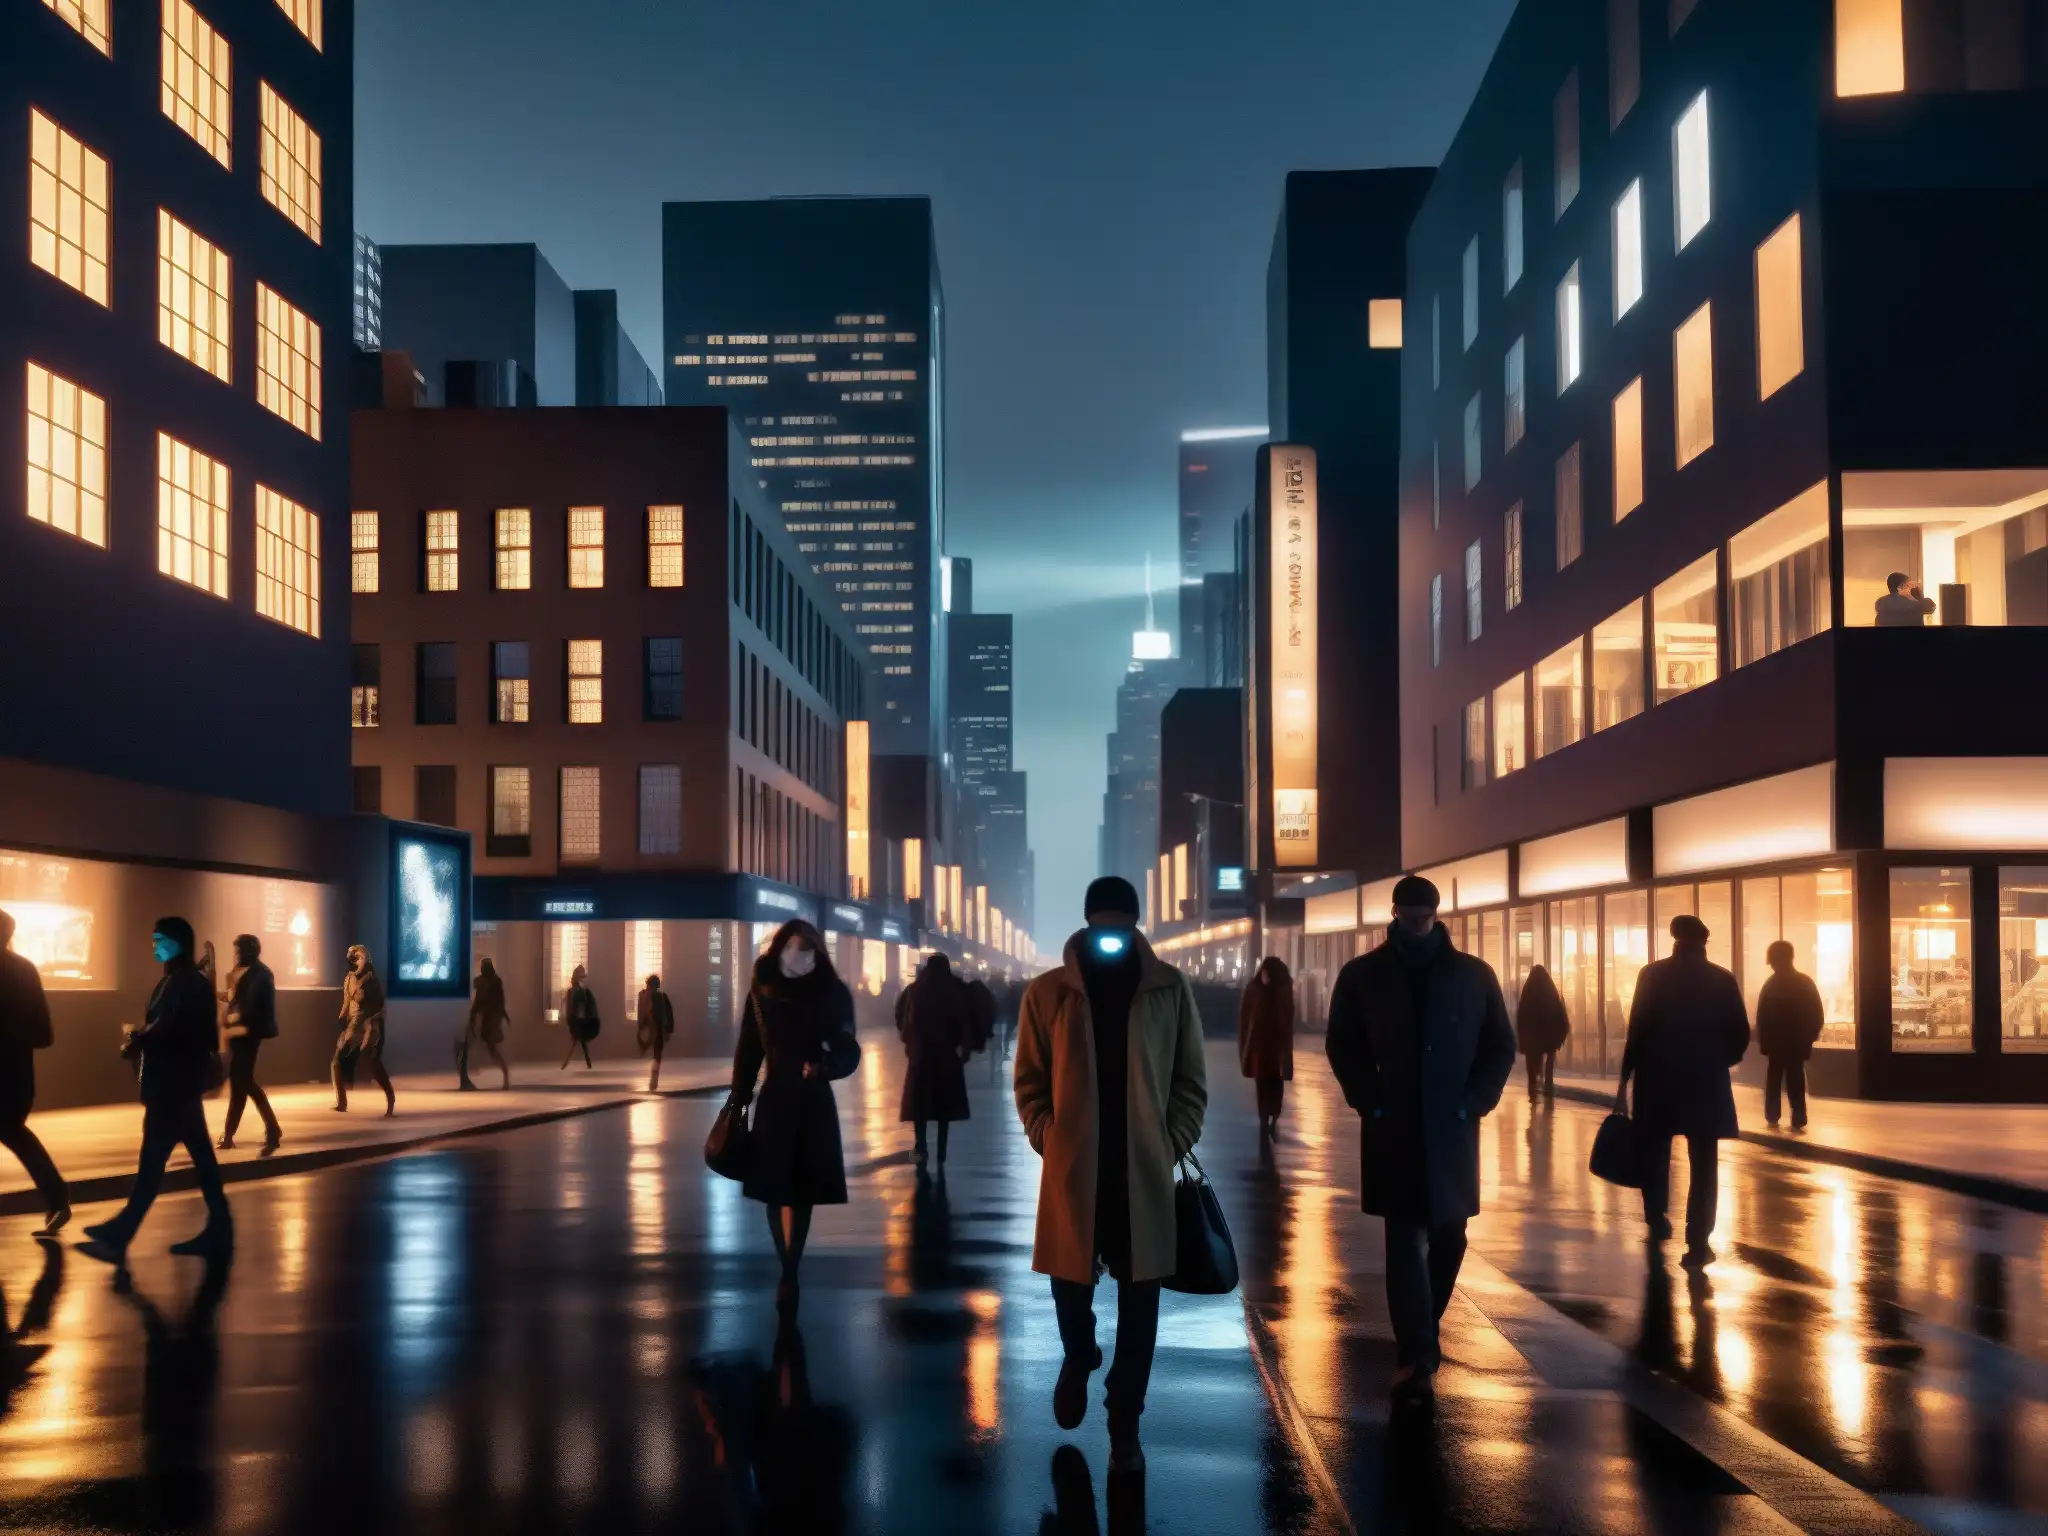 En una oscura y misteriosa calle de la ciudad, los dispositivos inteligentes iluminan rostros en una atmósfera de leyendas urbanas